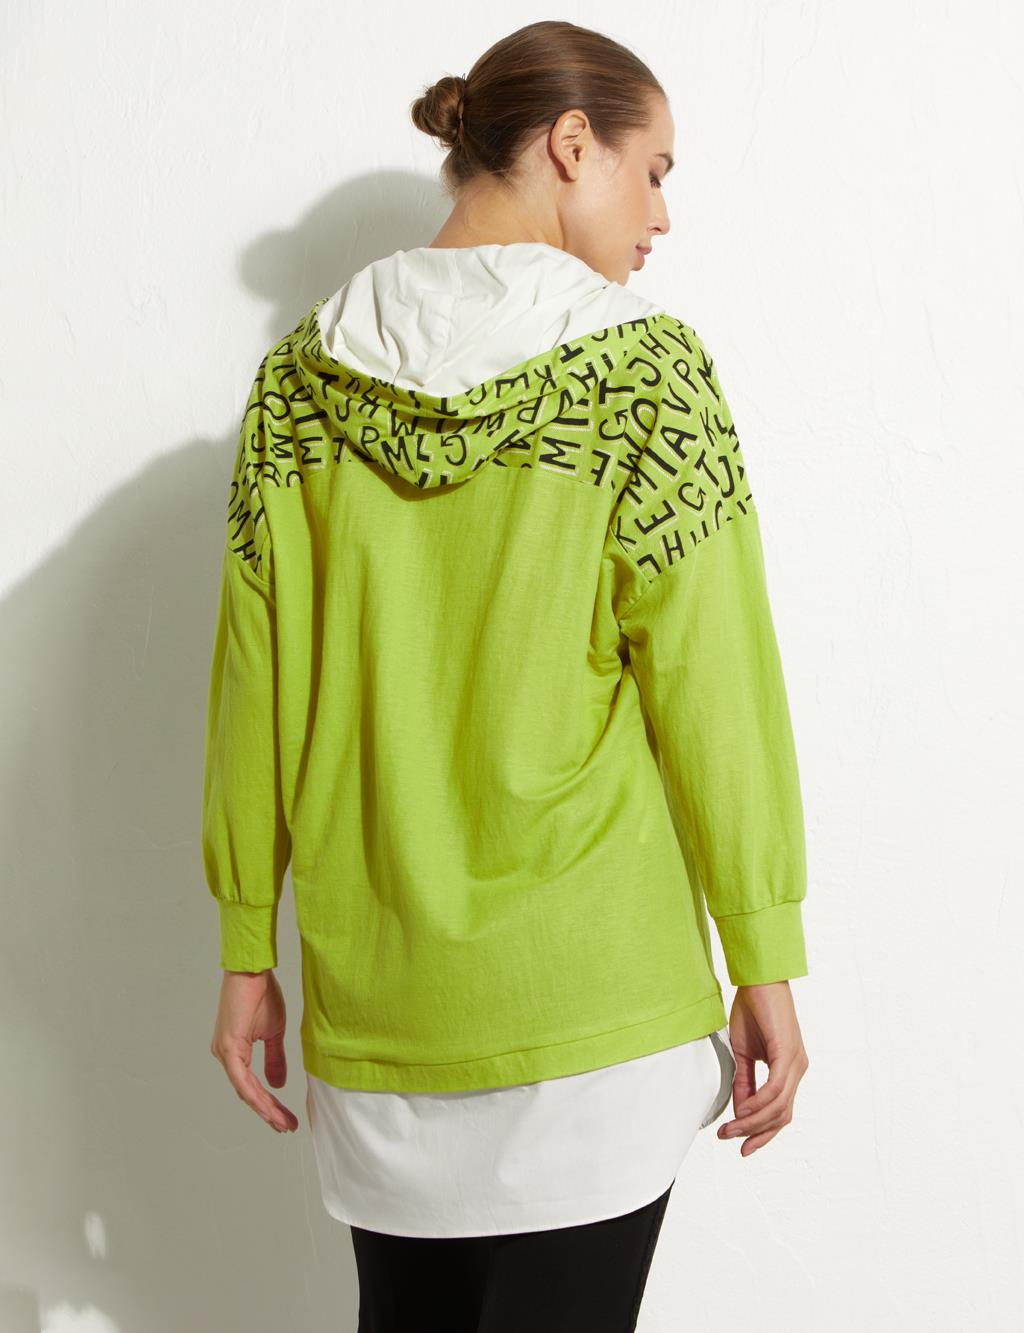 Grafik Baskılı Sweatshirt Fıstık Yeşili